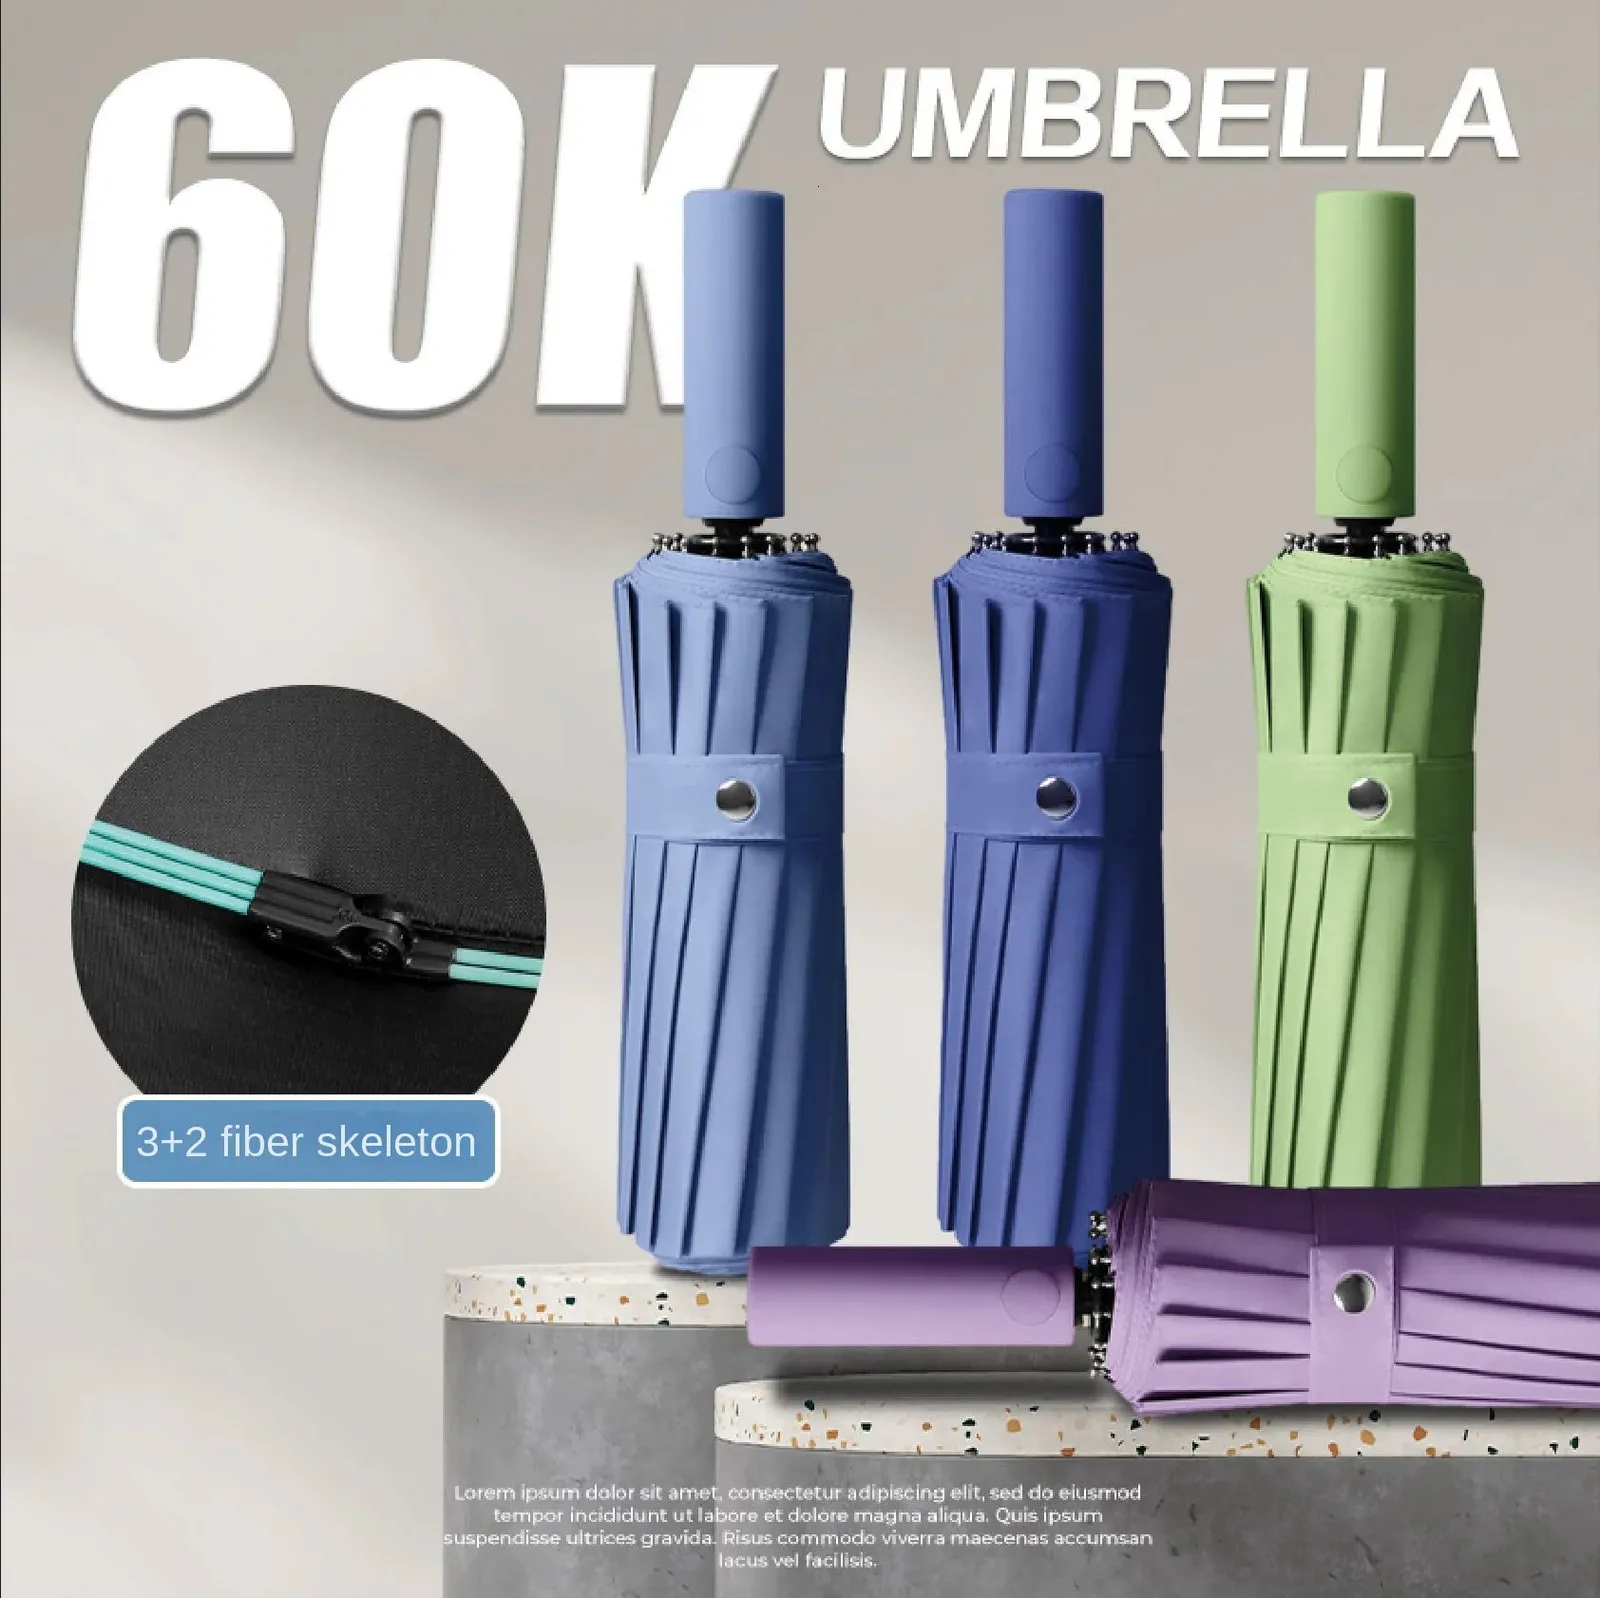 60 BONE WITR Odporny na wiatr, wzmocniony Automatyczny parasol dla mężczyzn deszcz i połysk podwójny określenie słoneczne UV Parasole Słońca 240301